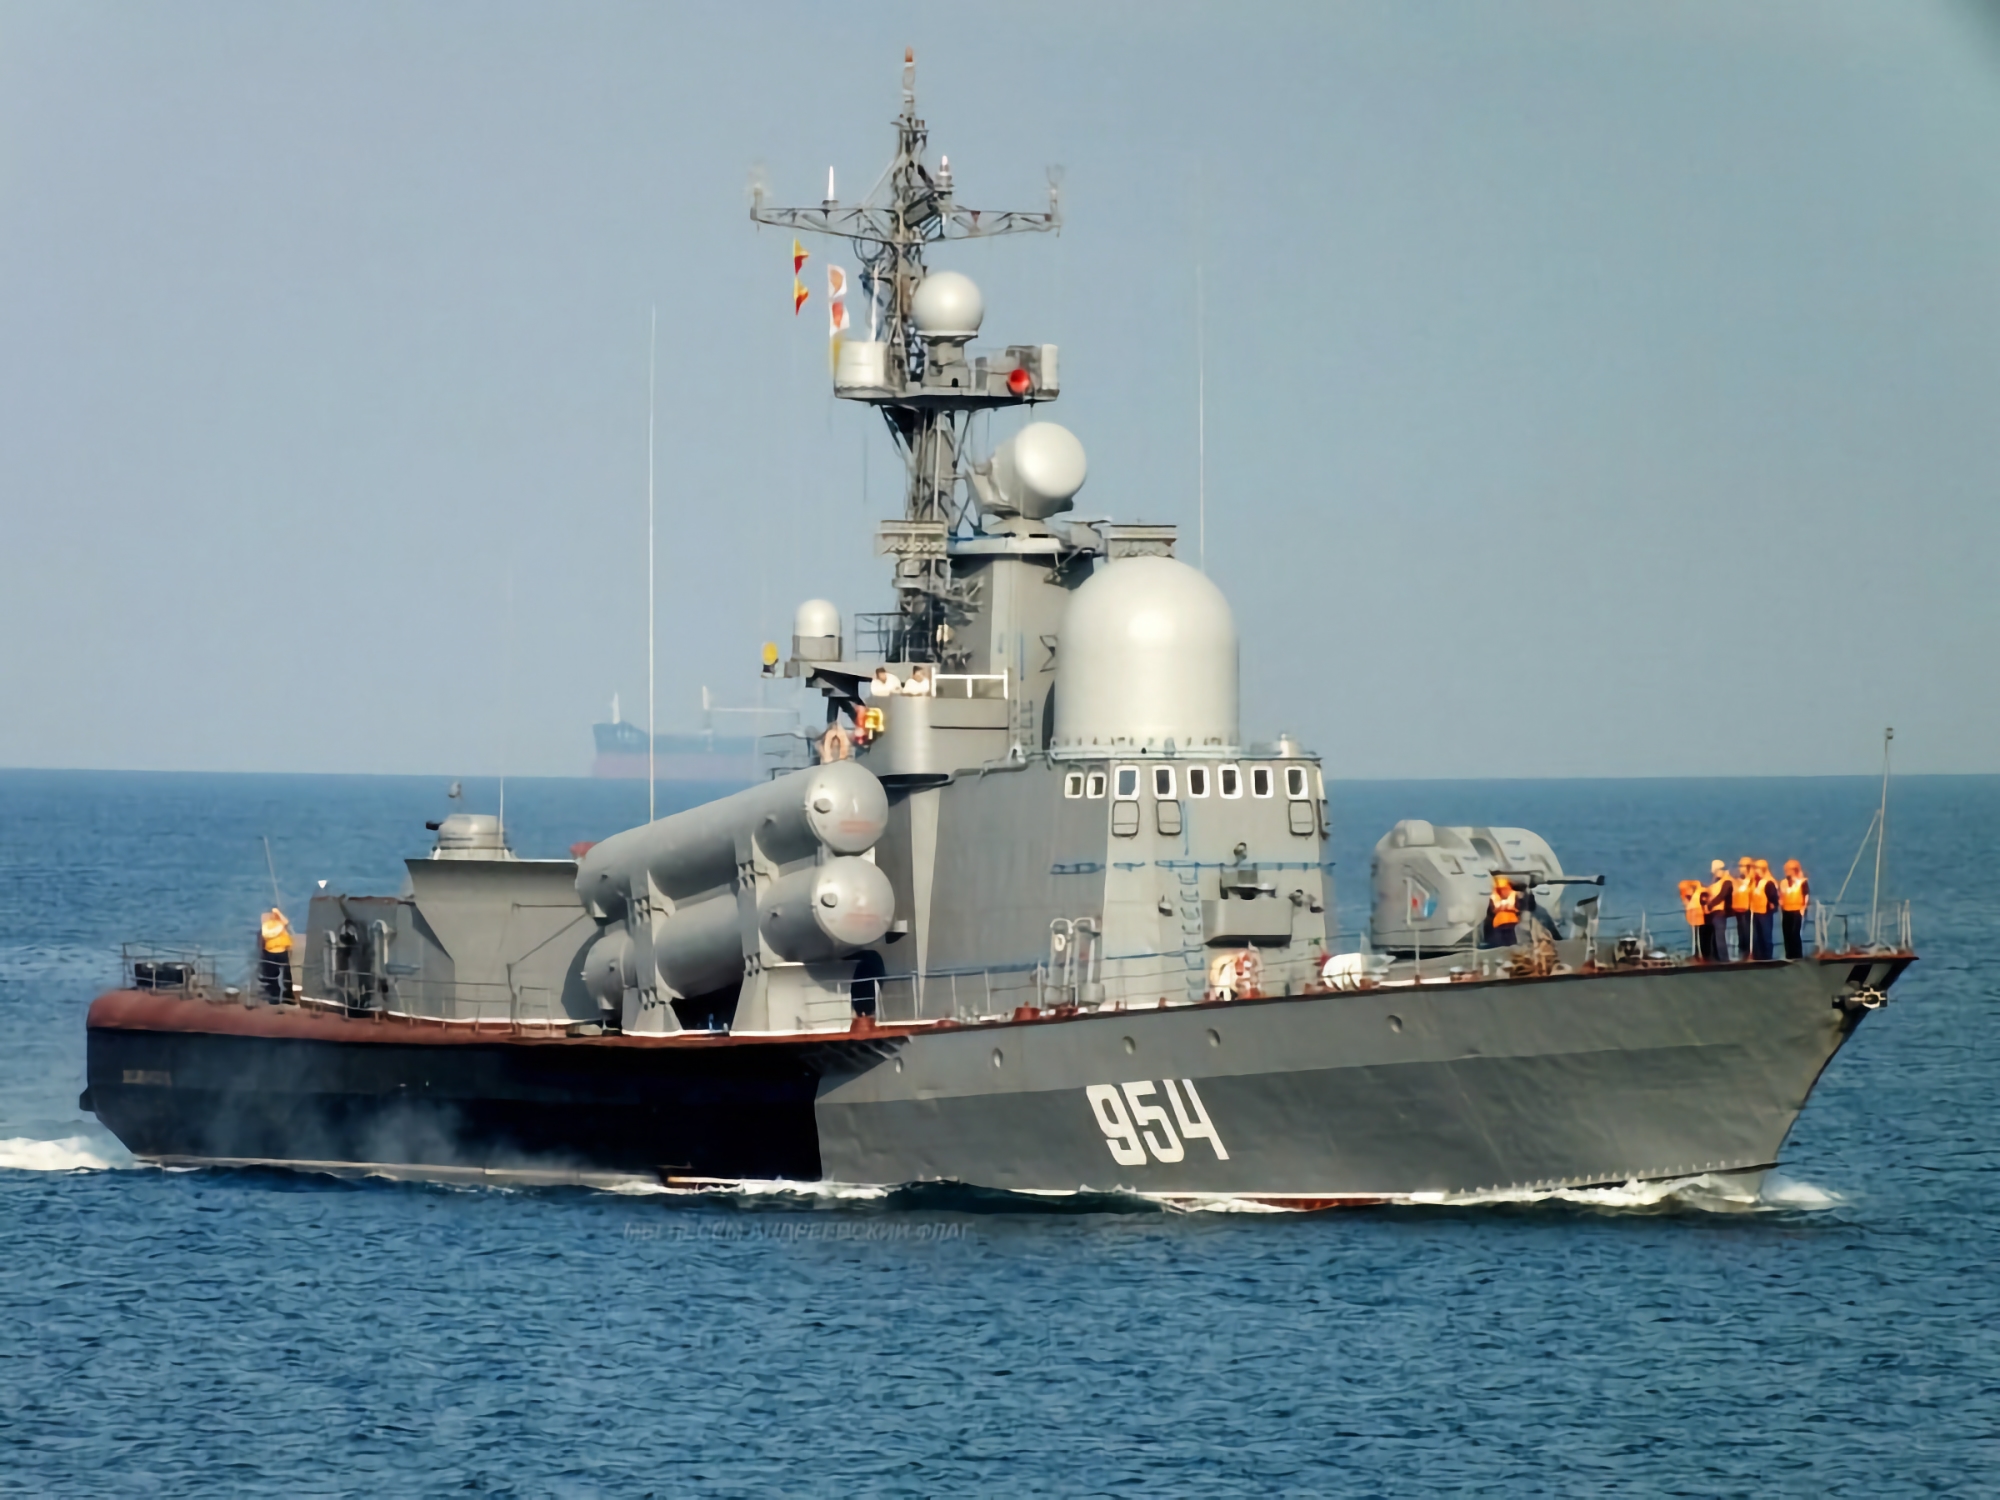 Der ukrainische Geheimdienst hat mit Hilfe einer Seedrohne das Iwanowetz-Raketenboot der russischen Schwarzmeerflotte zerstört, das einen Wert von 60-70 Millionen Dollar hat